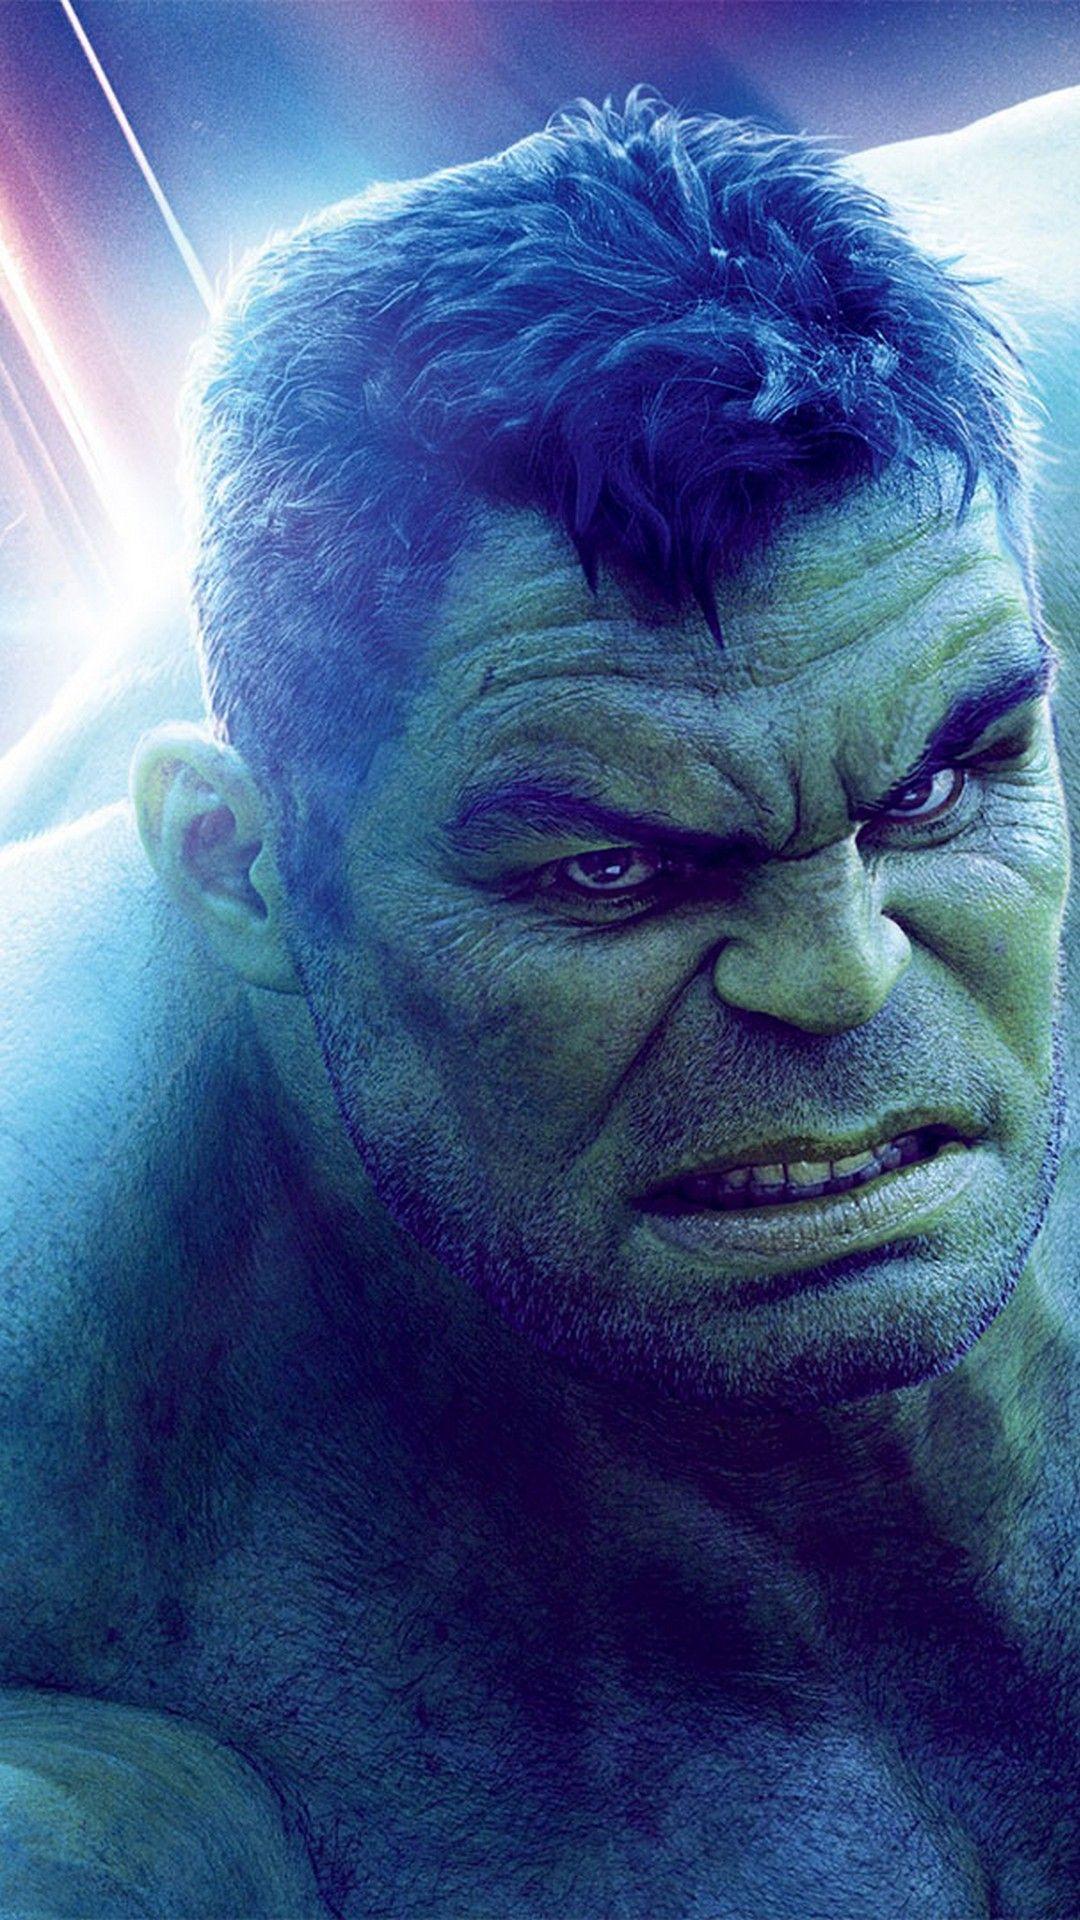 Hulk Avengers Endgame iPhone Wallpaper Movie Poster Wallpaper